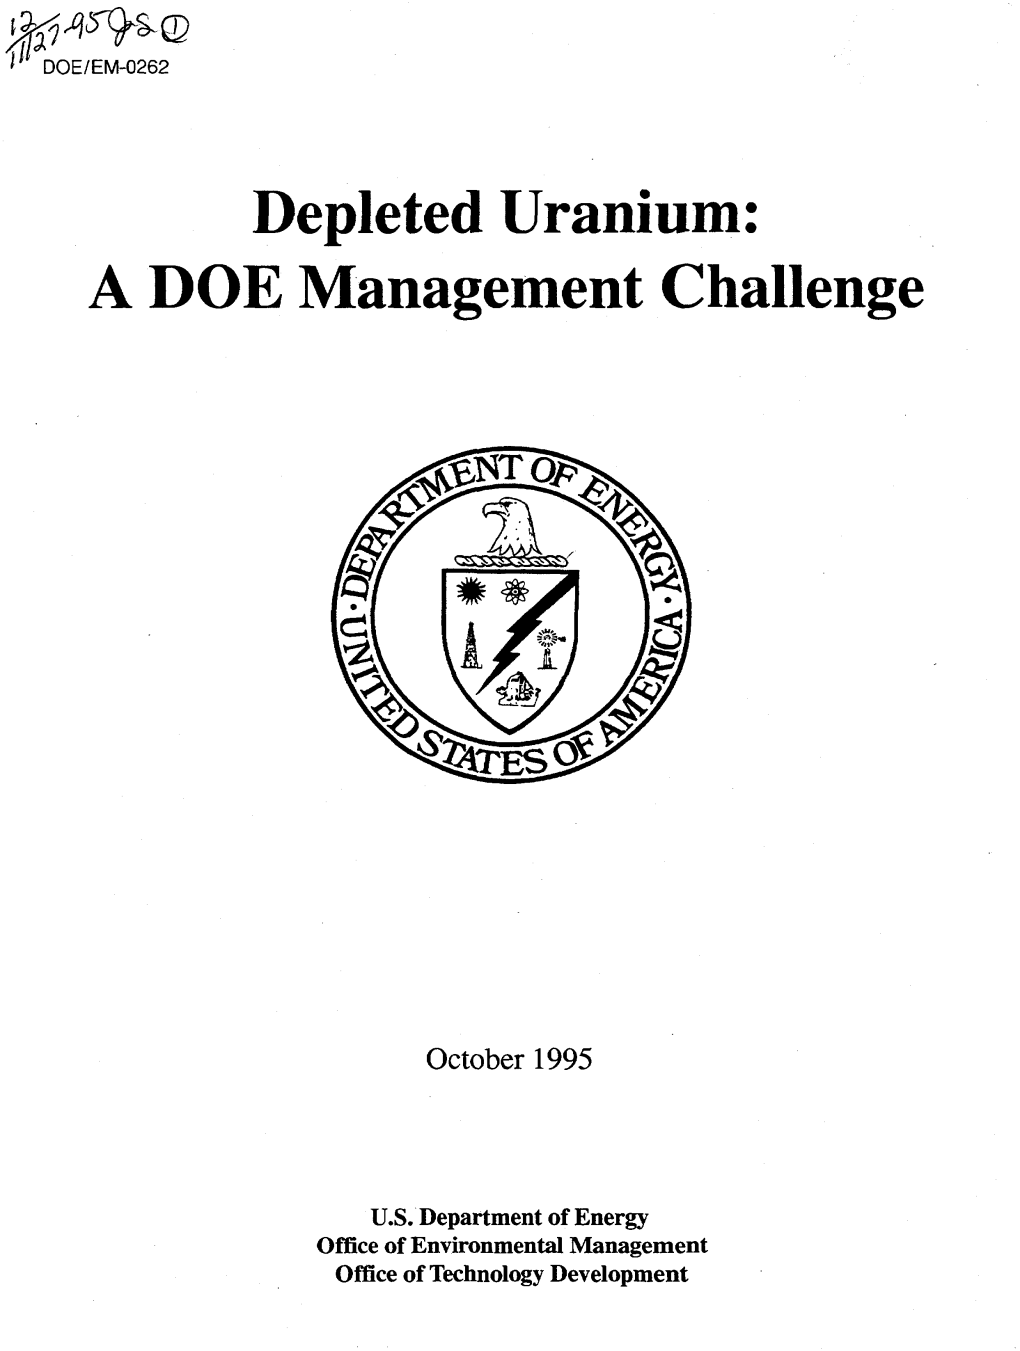 Depleted Uranium: a DOE Management Challenge